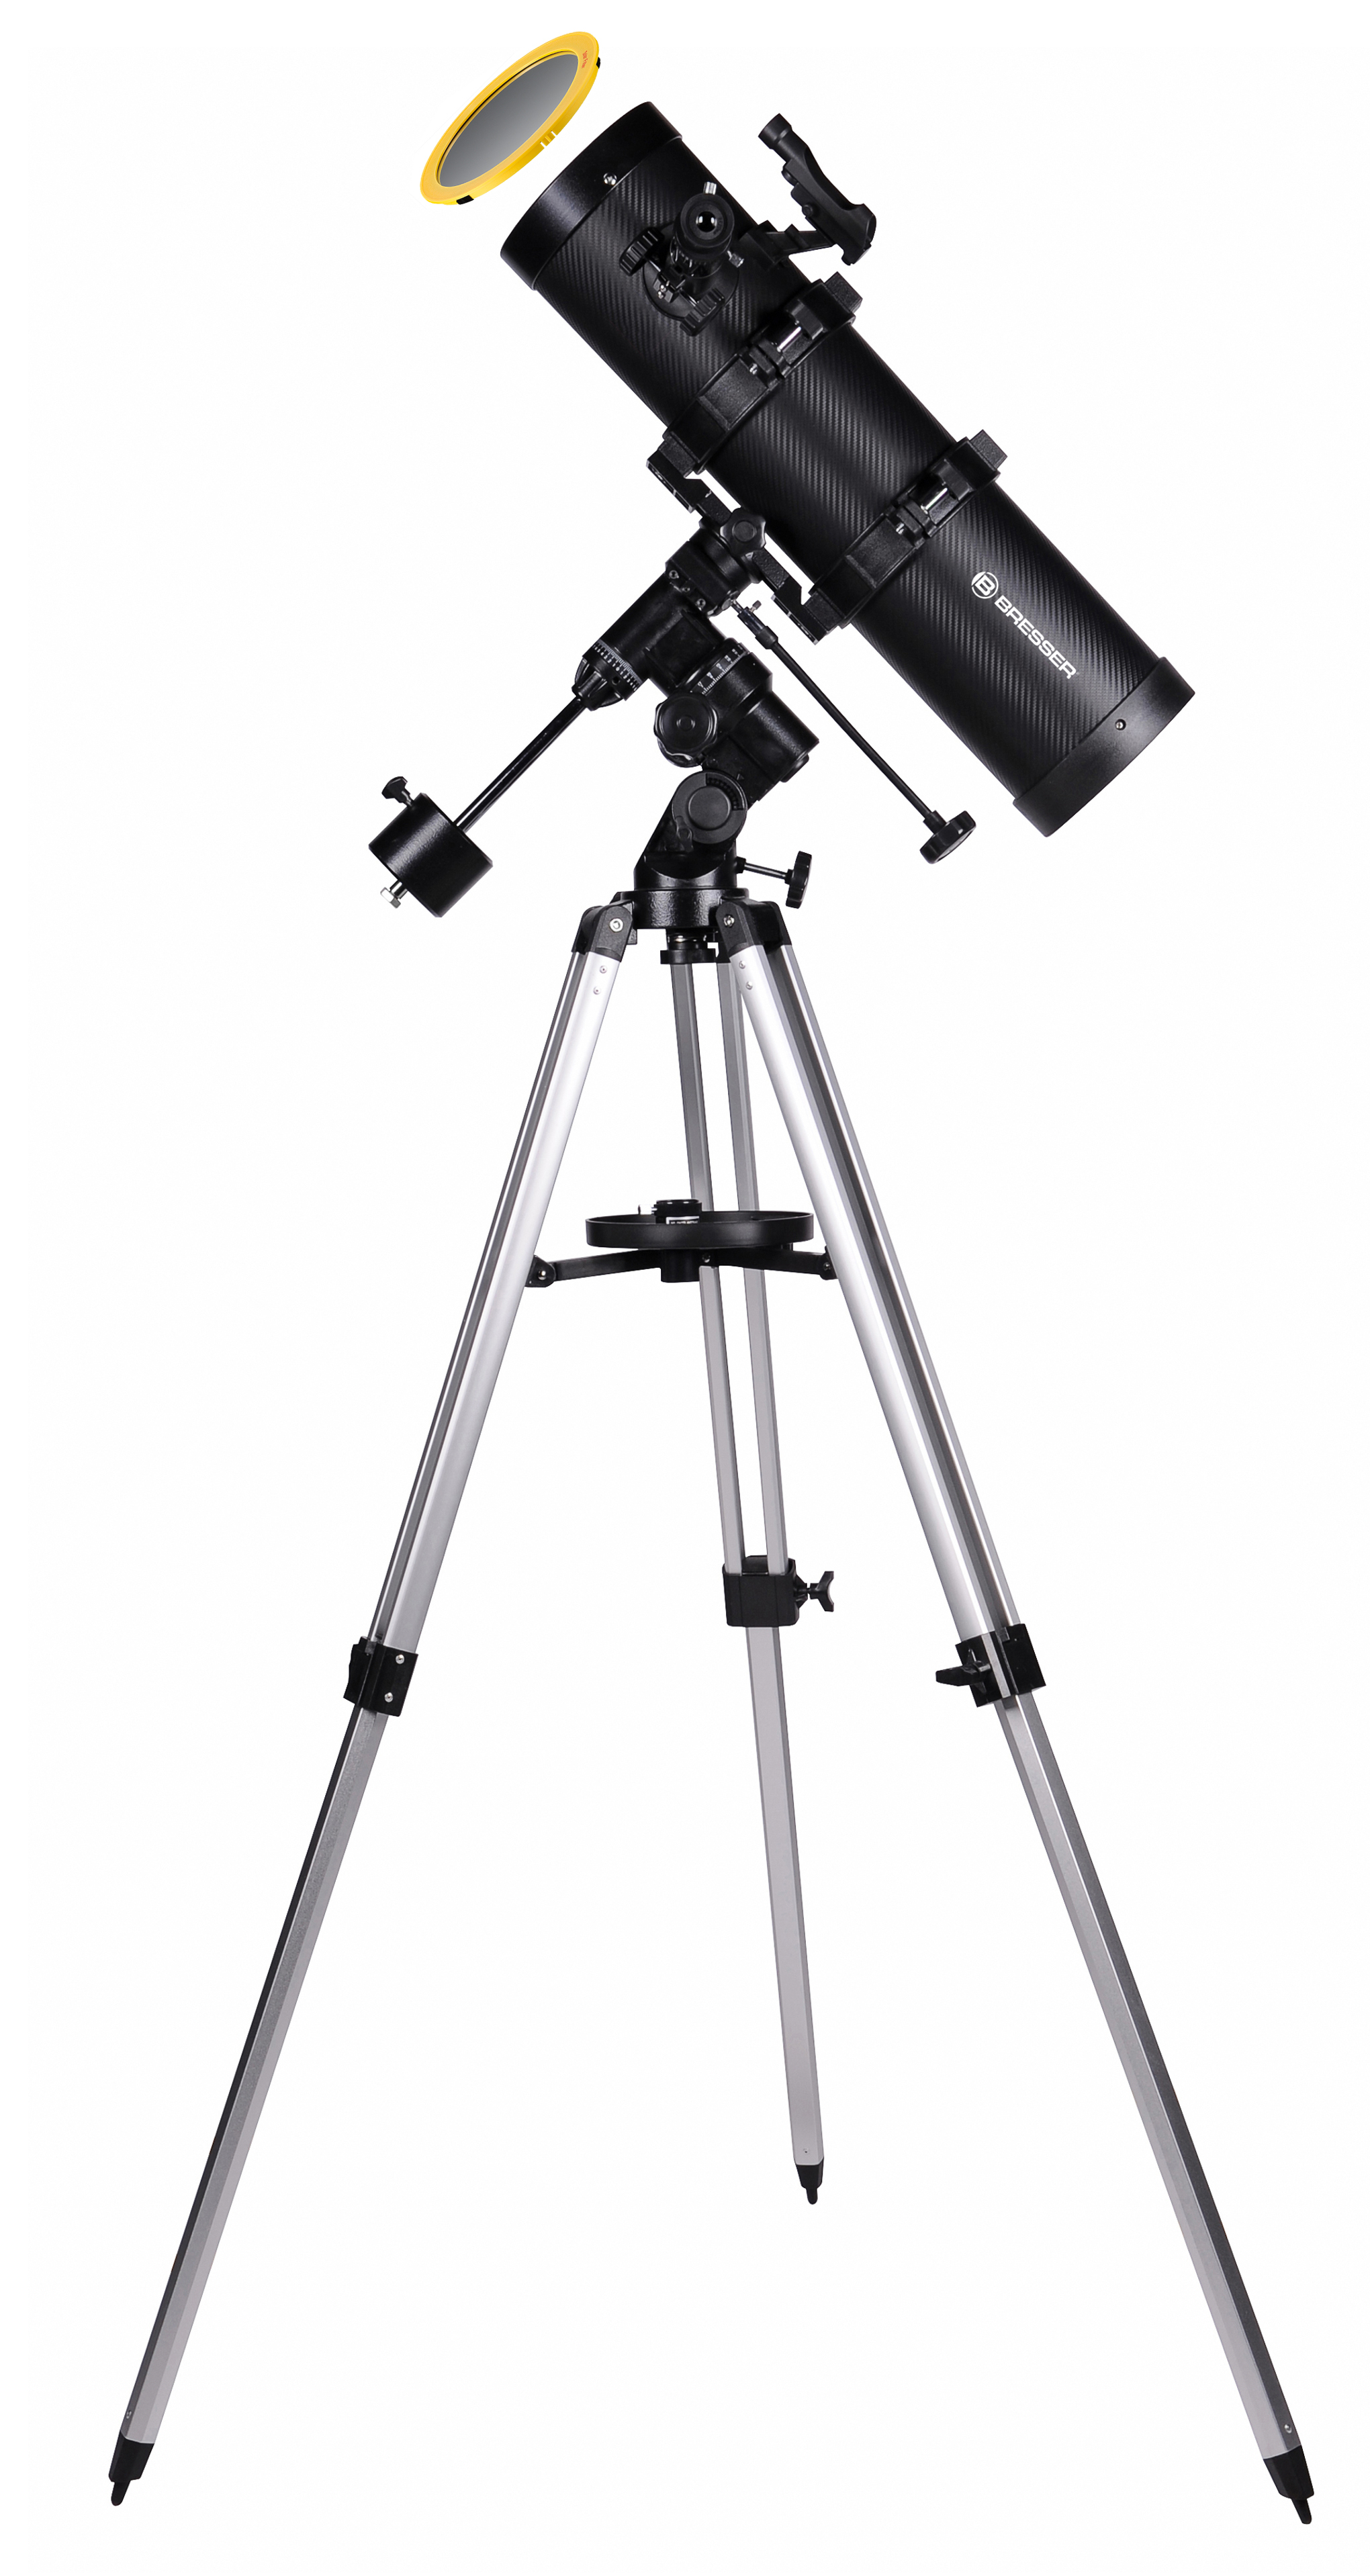 Telescopio riflettore newtoniano BRESSER Spica 130/650 EQ3 con adattatore per fotocamera smartphone